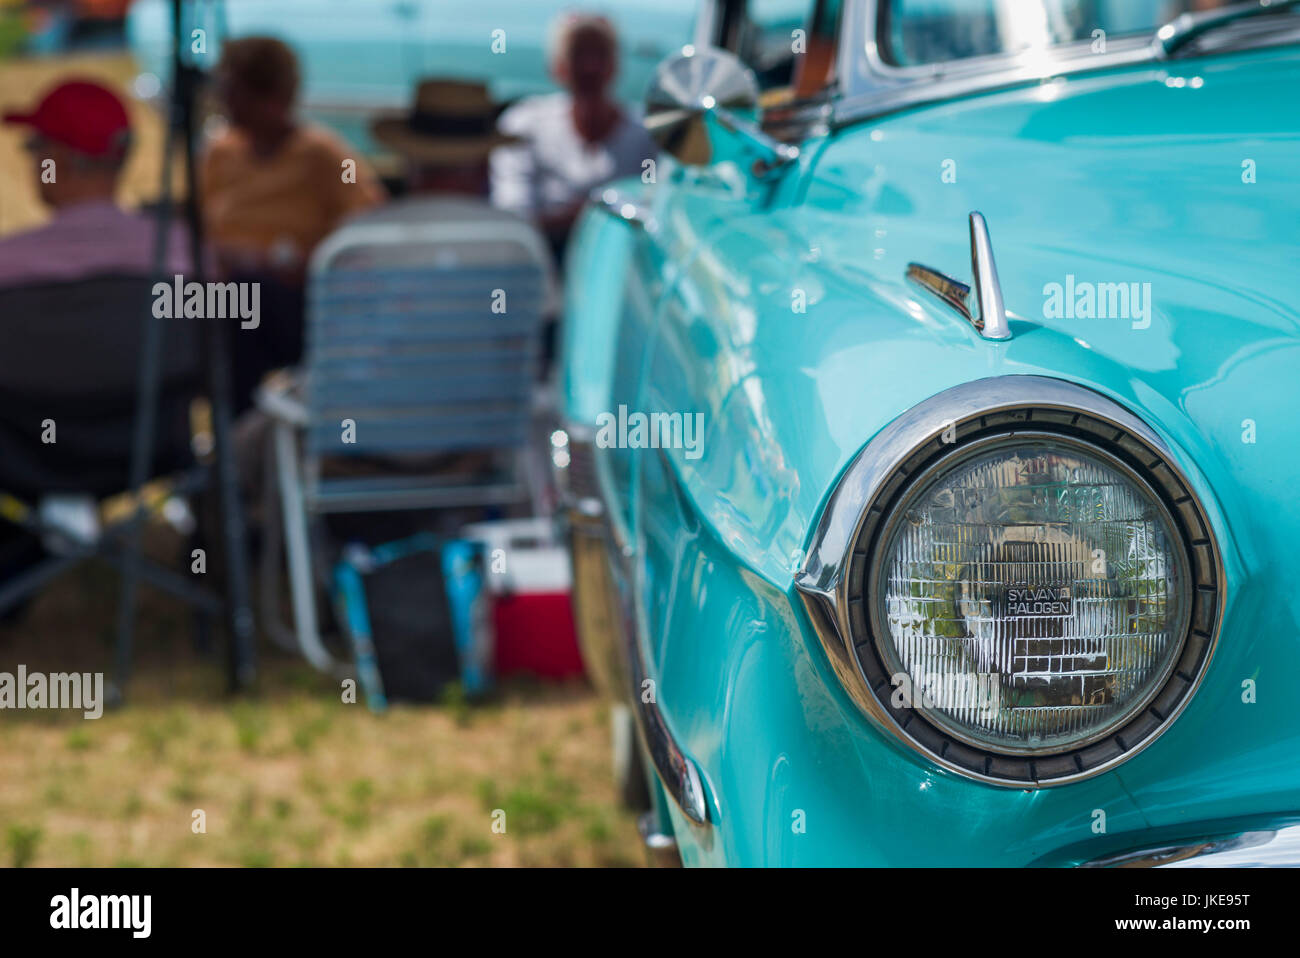 USA, Massachusetts, Cape Ann, Gloucester, Antique car show, détail Chevrolet Classic Banque D'Images